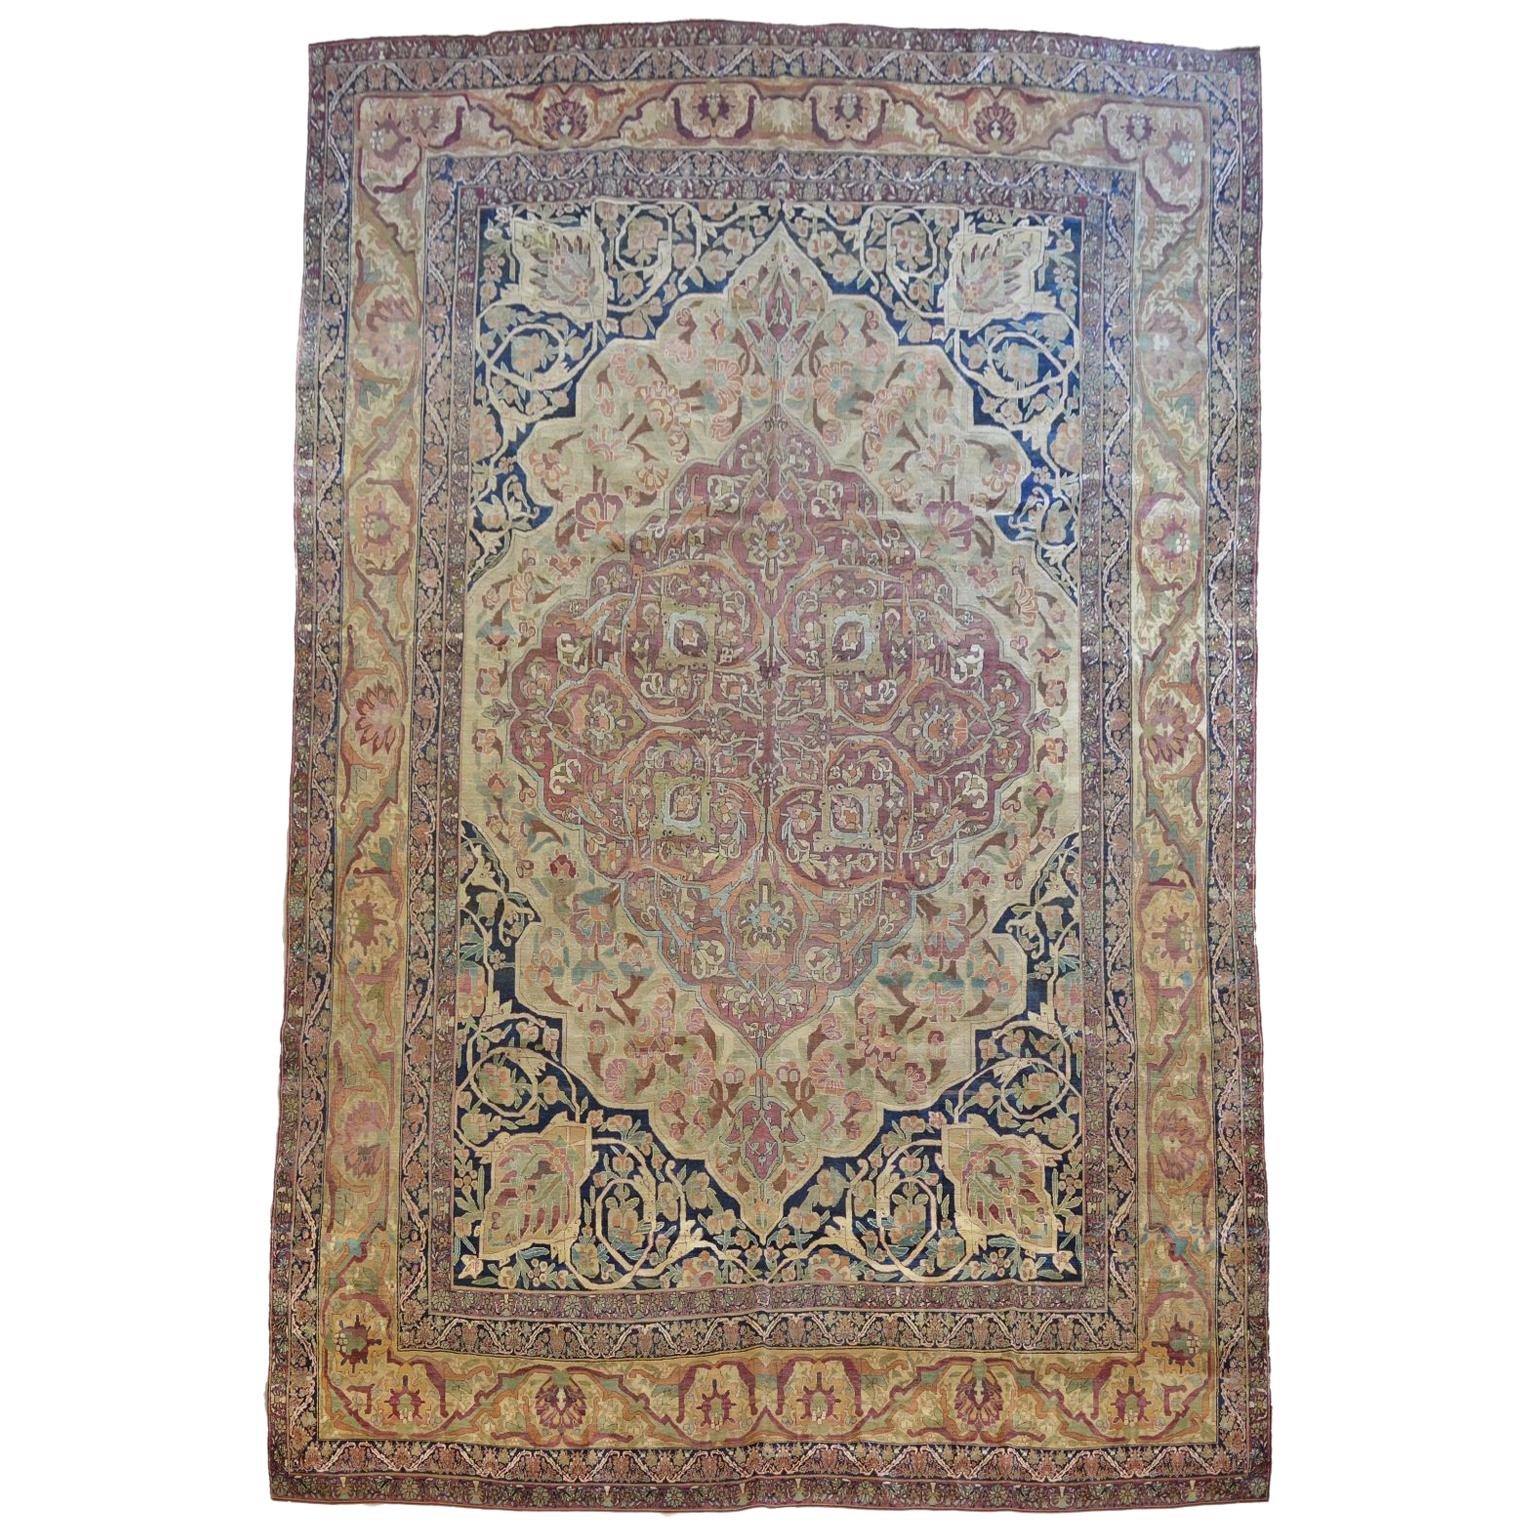 Antique 1870s Persian Kermanshah Rug, Floral Motifs, 10' x 14' For Sale